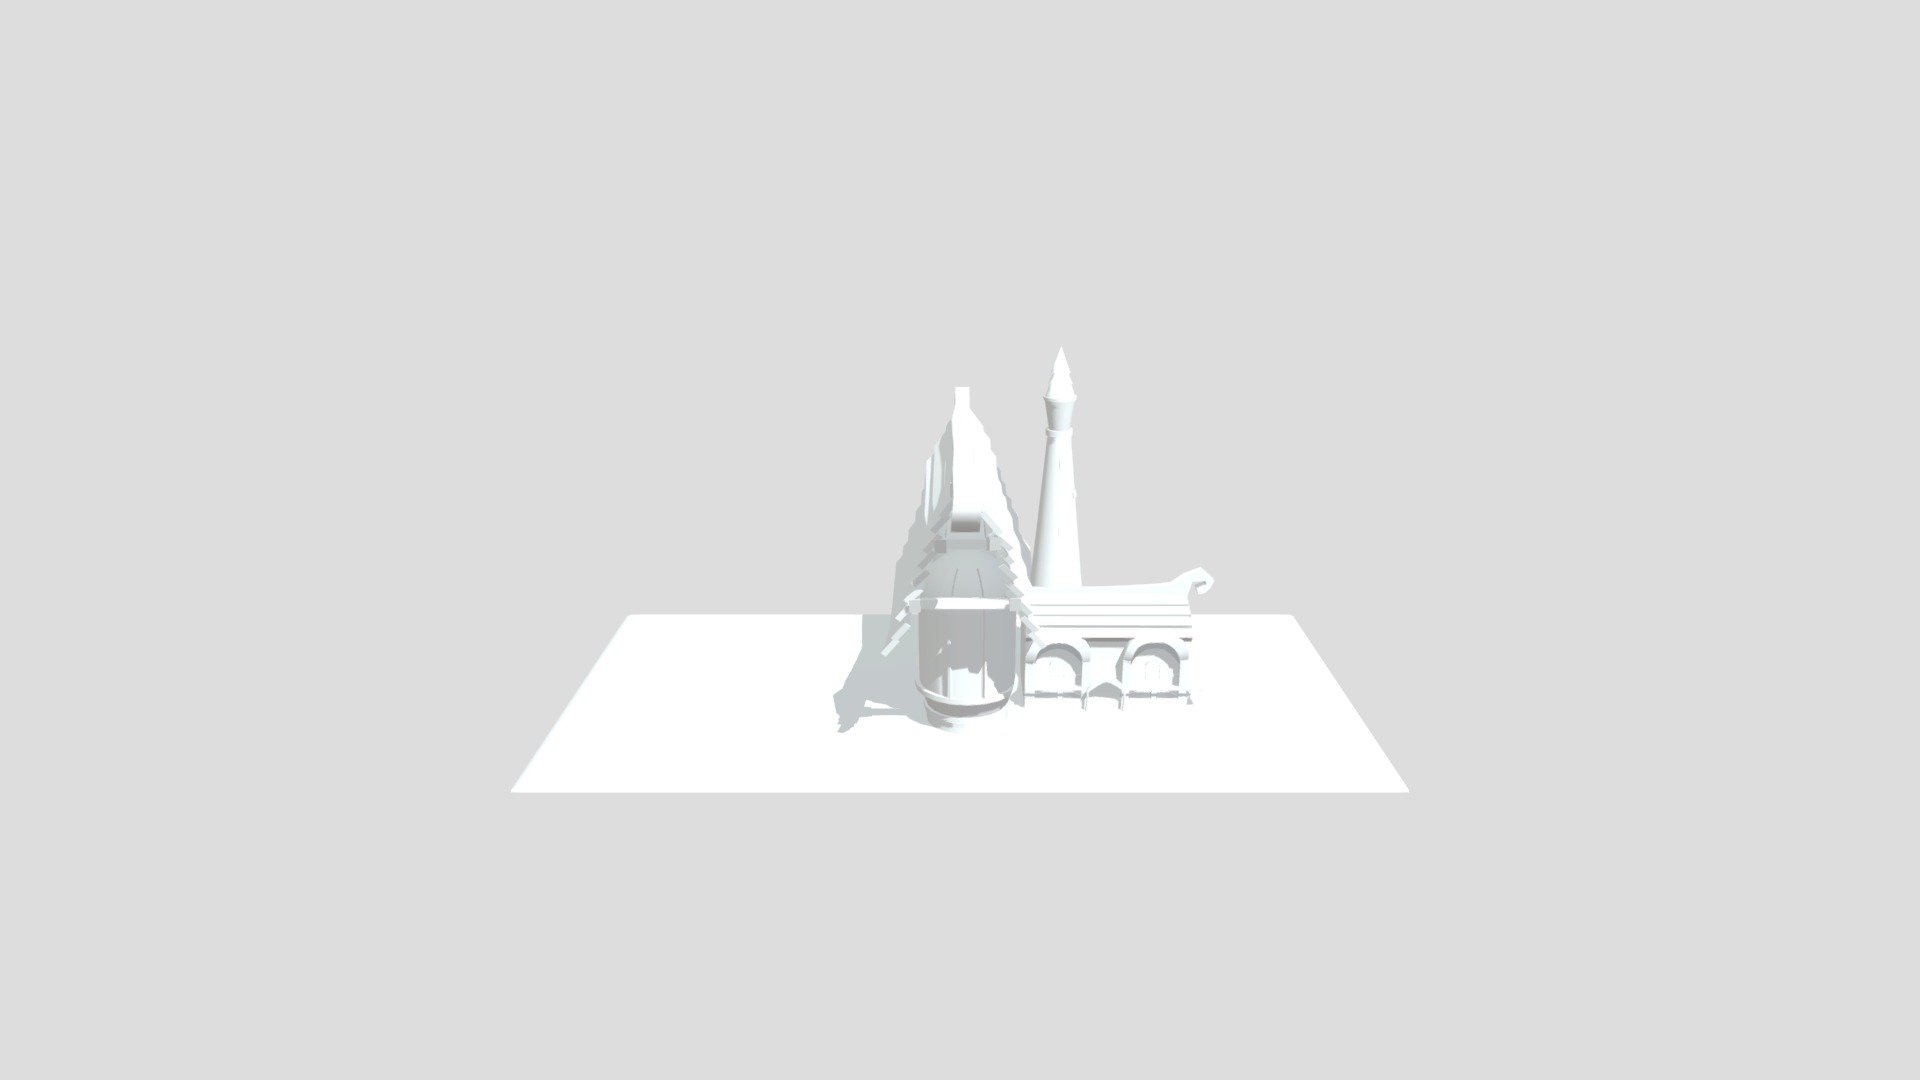 House 3D modeling in maya